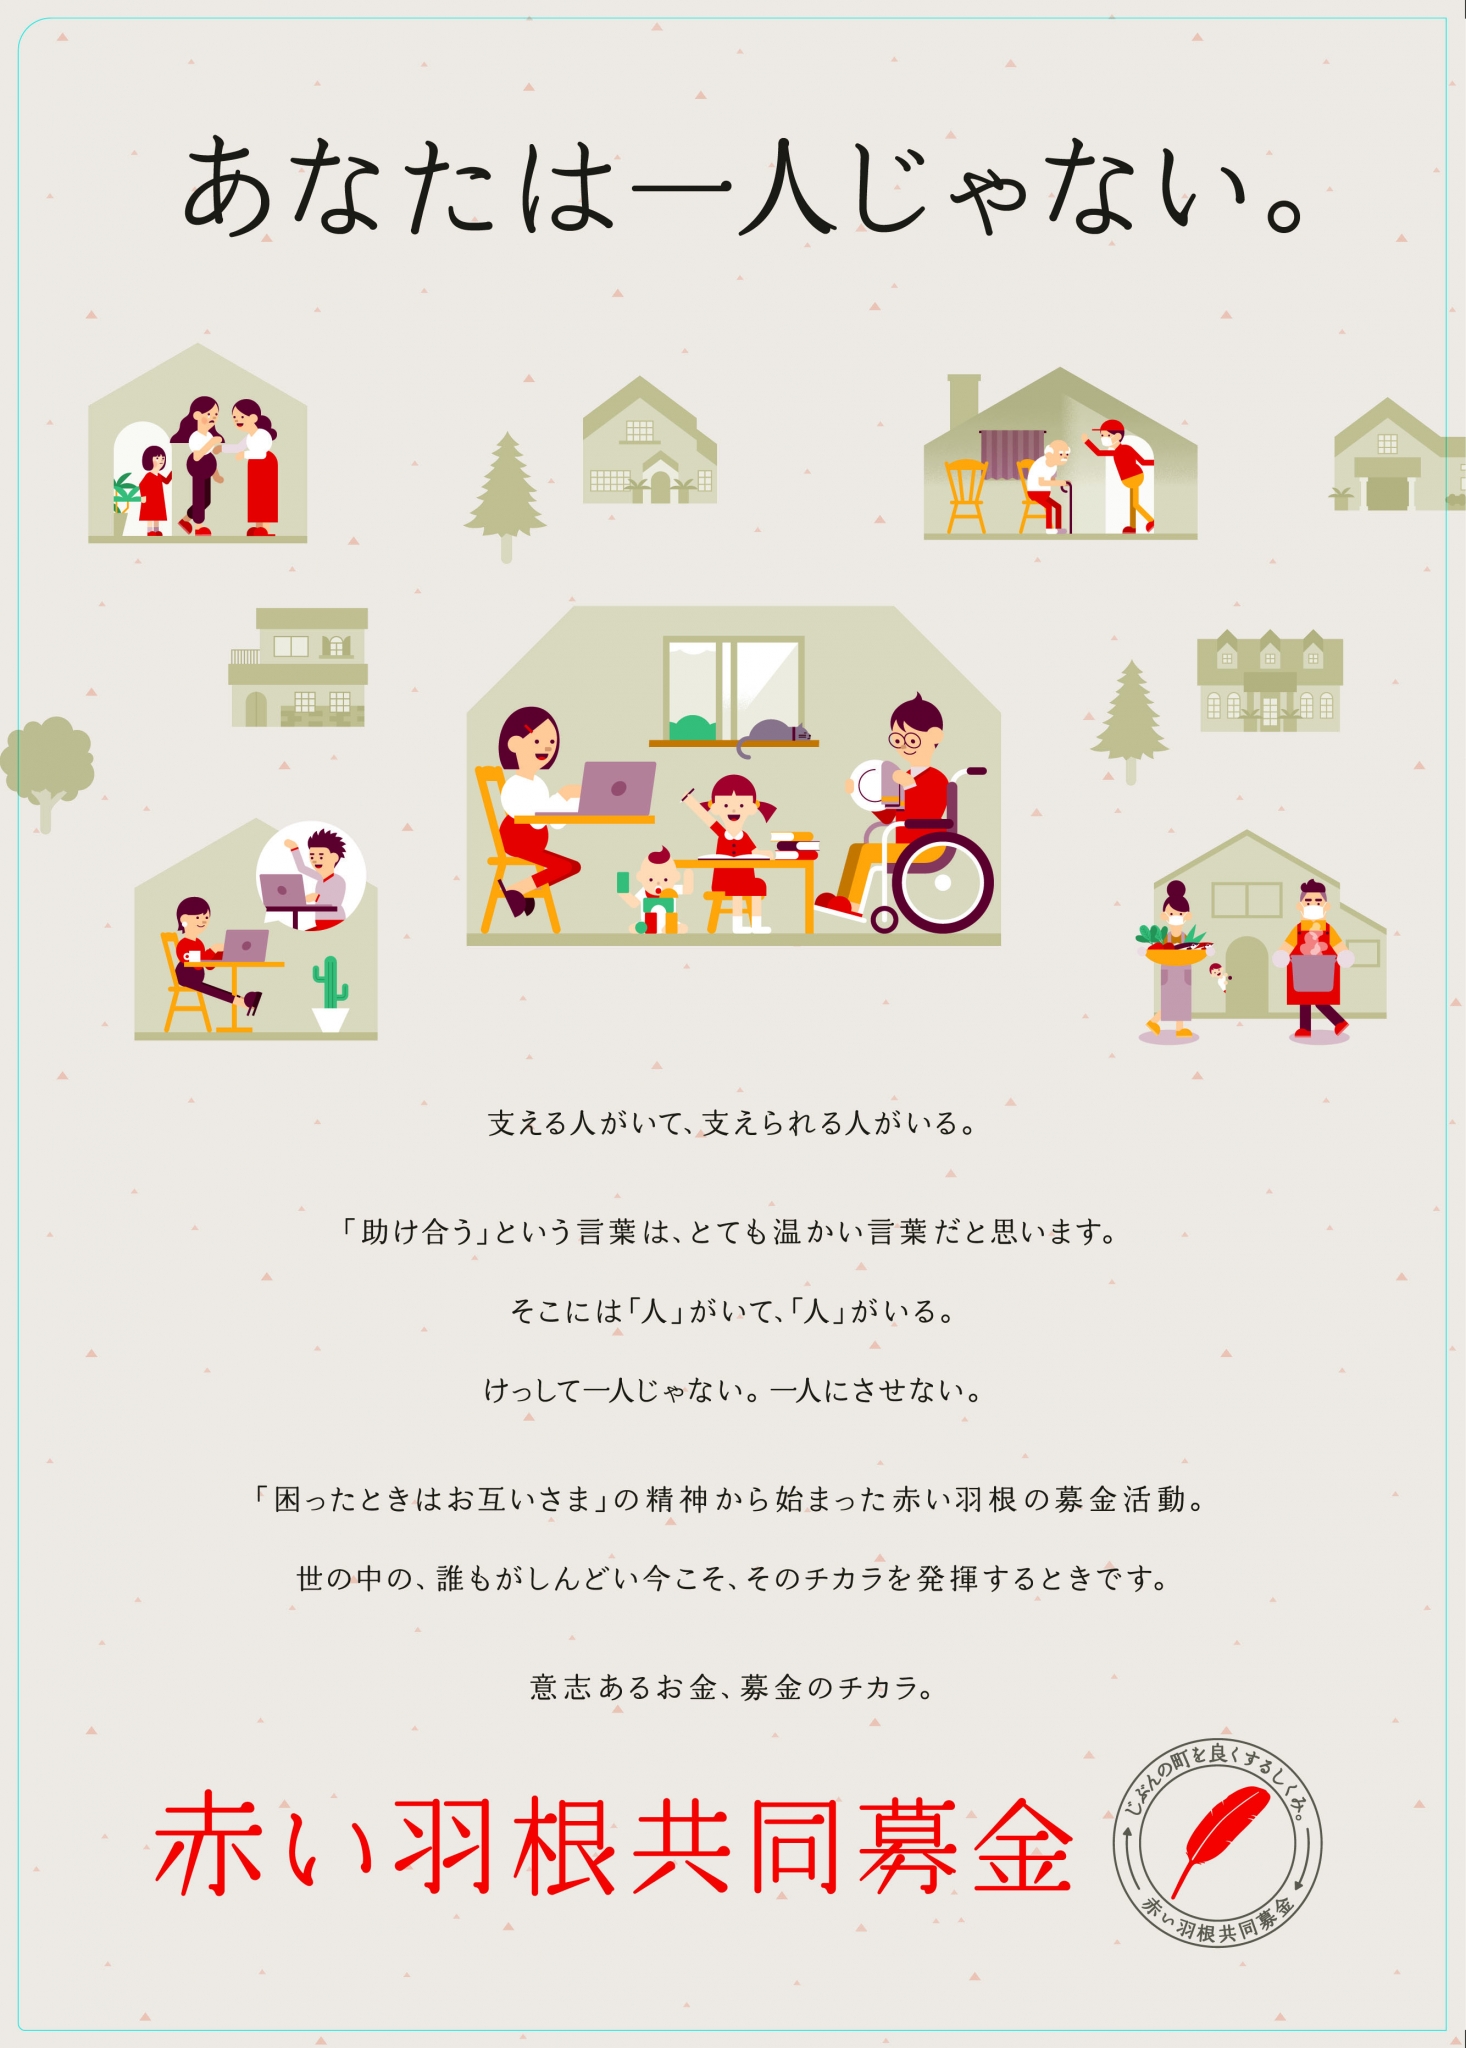 イベント お知らせ ながの赤い羽根共同募金 長野県共同募金会